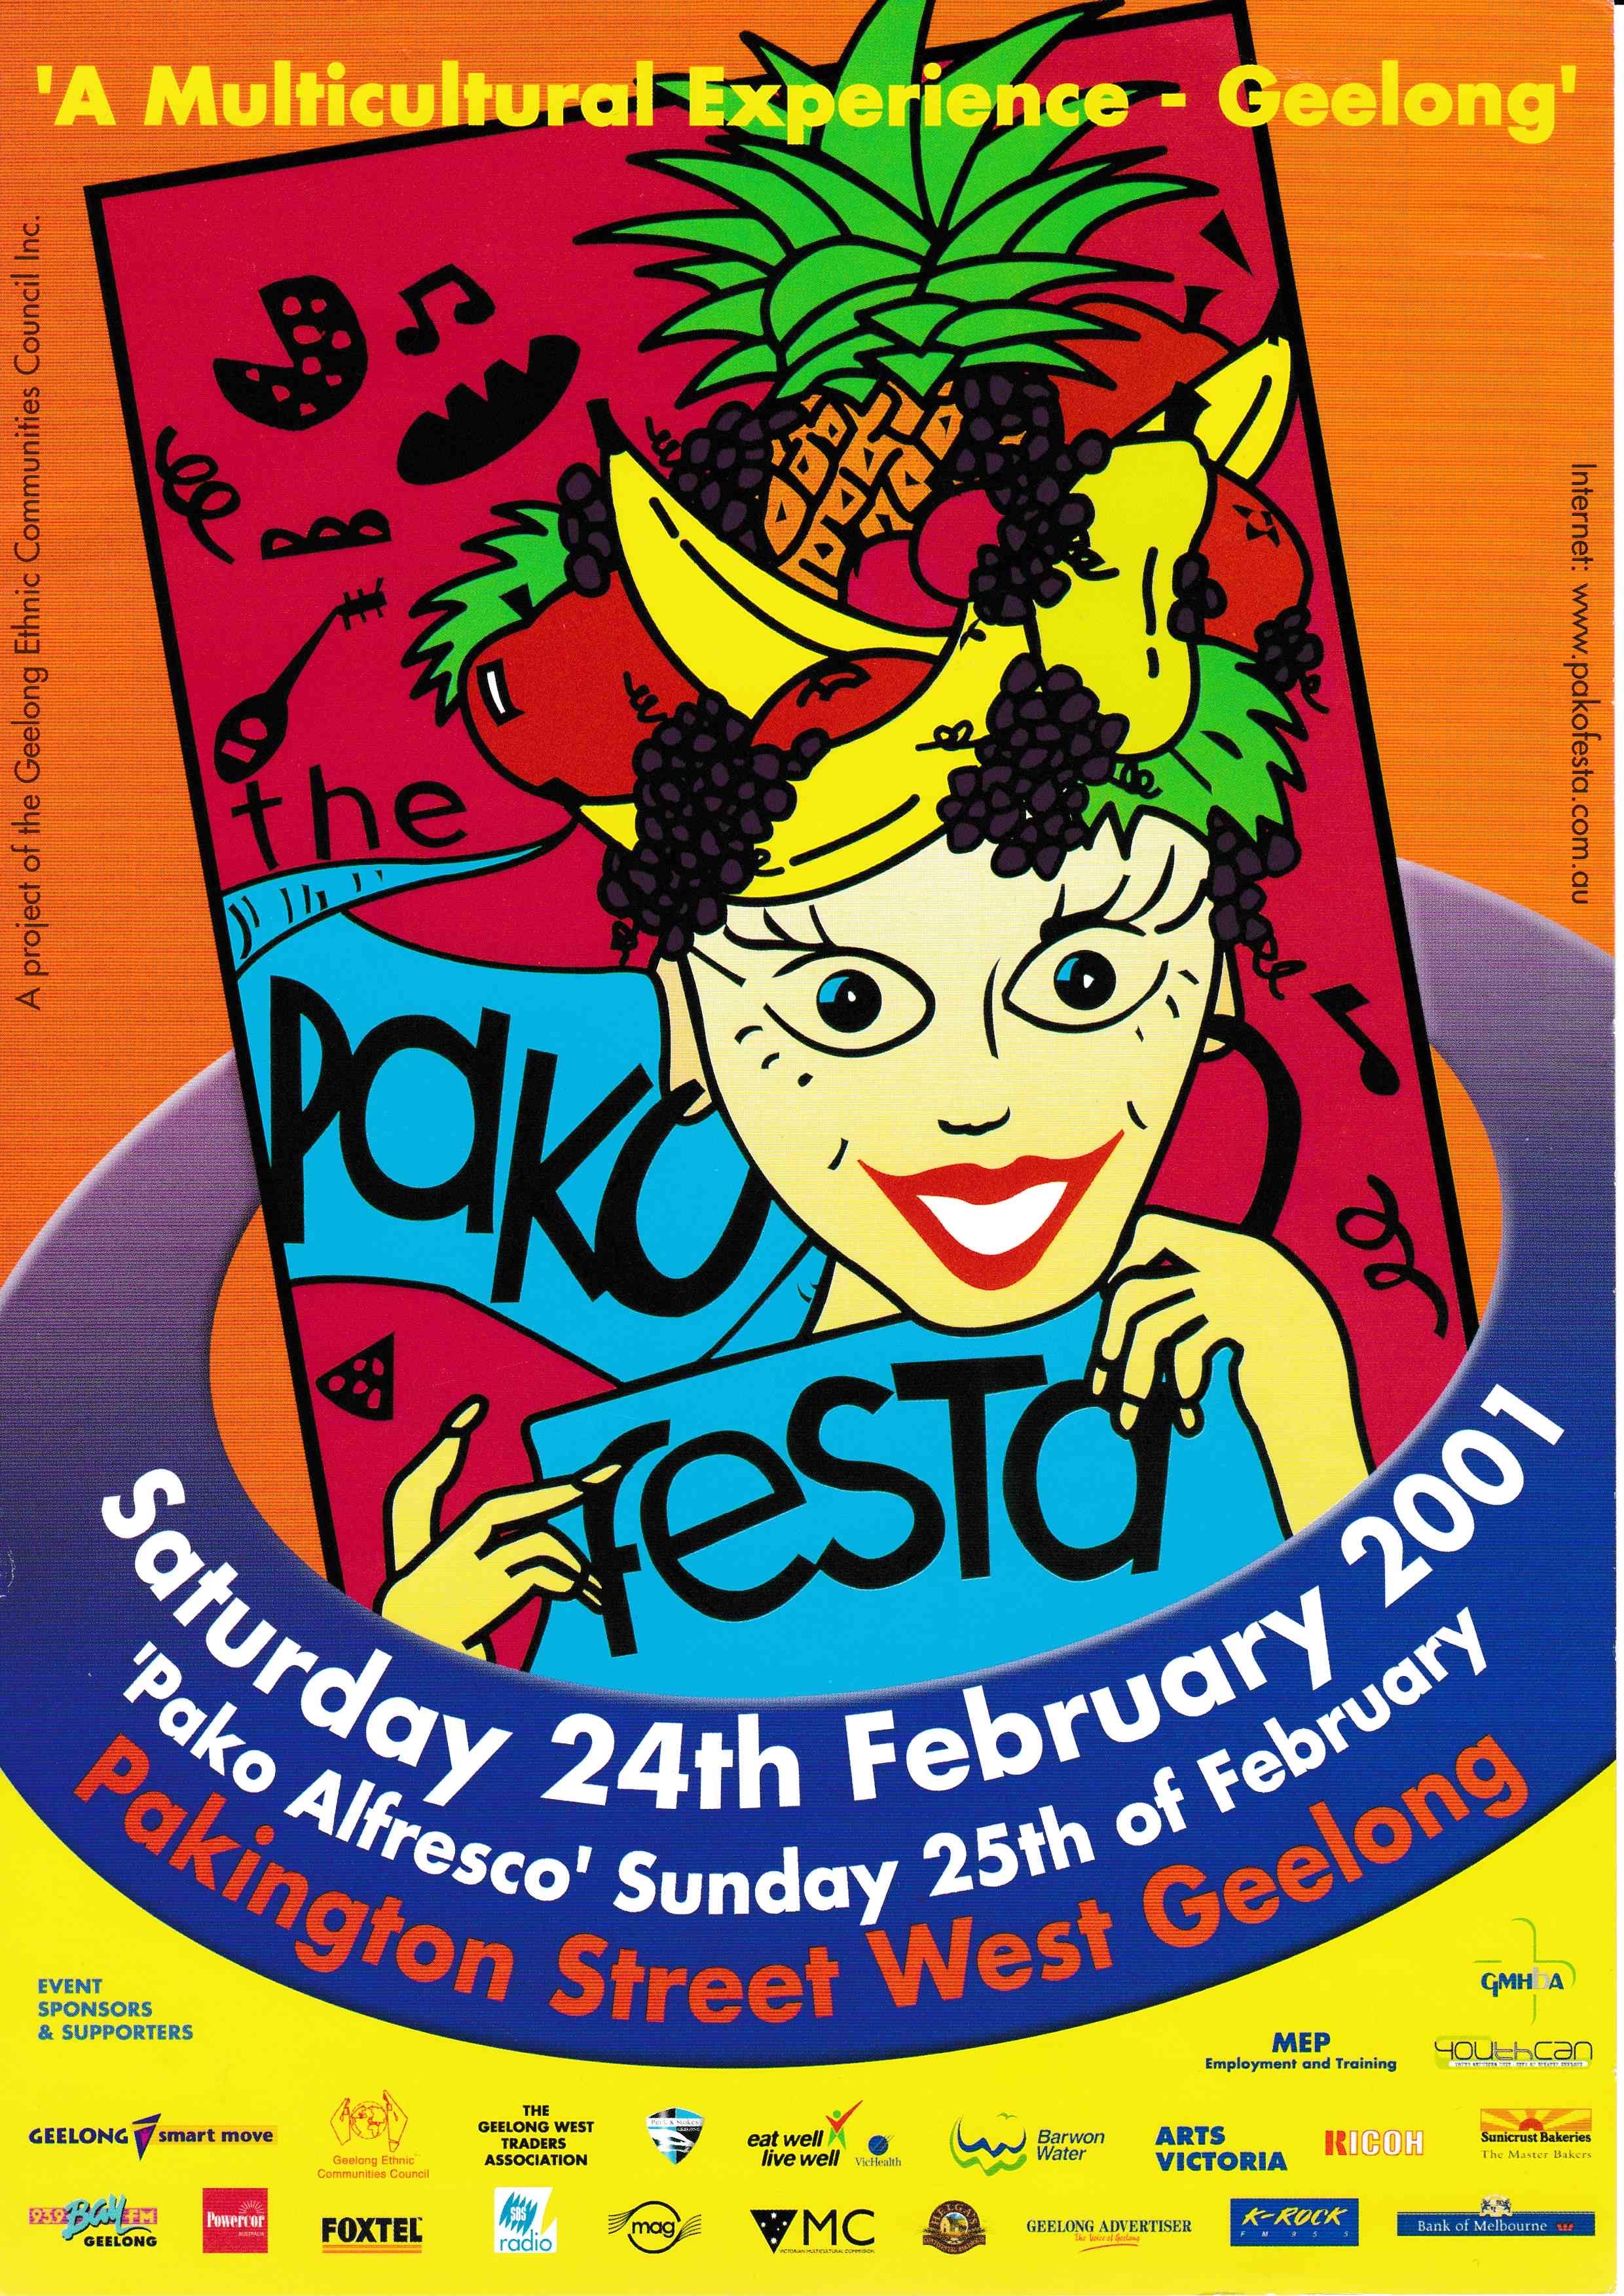 2001 Pako Festa Poster